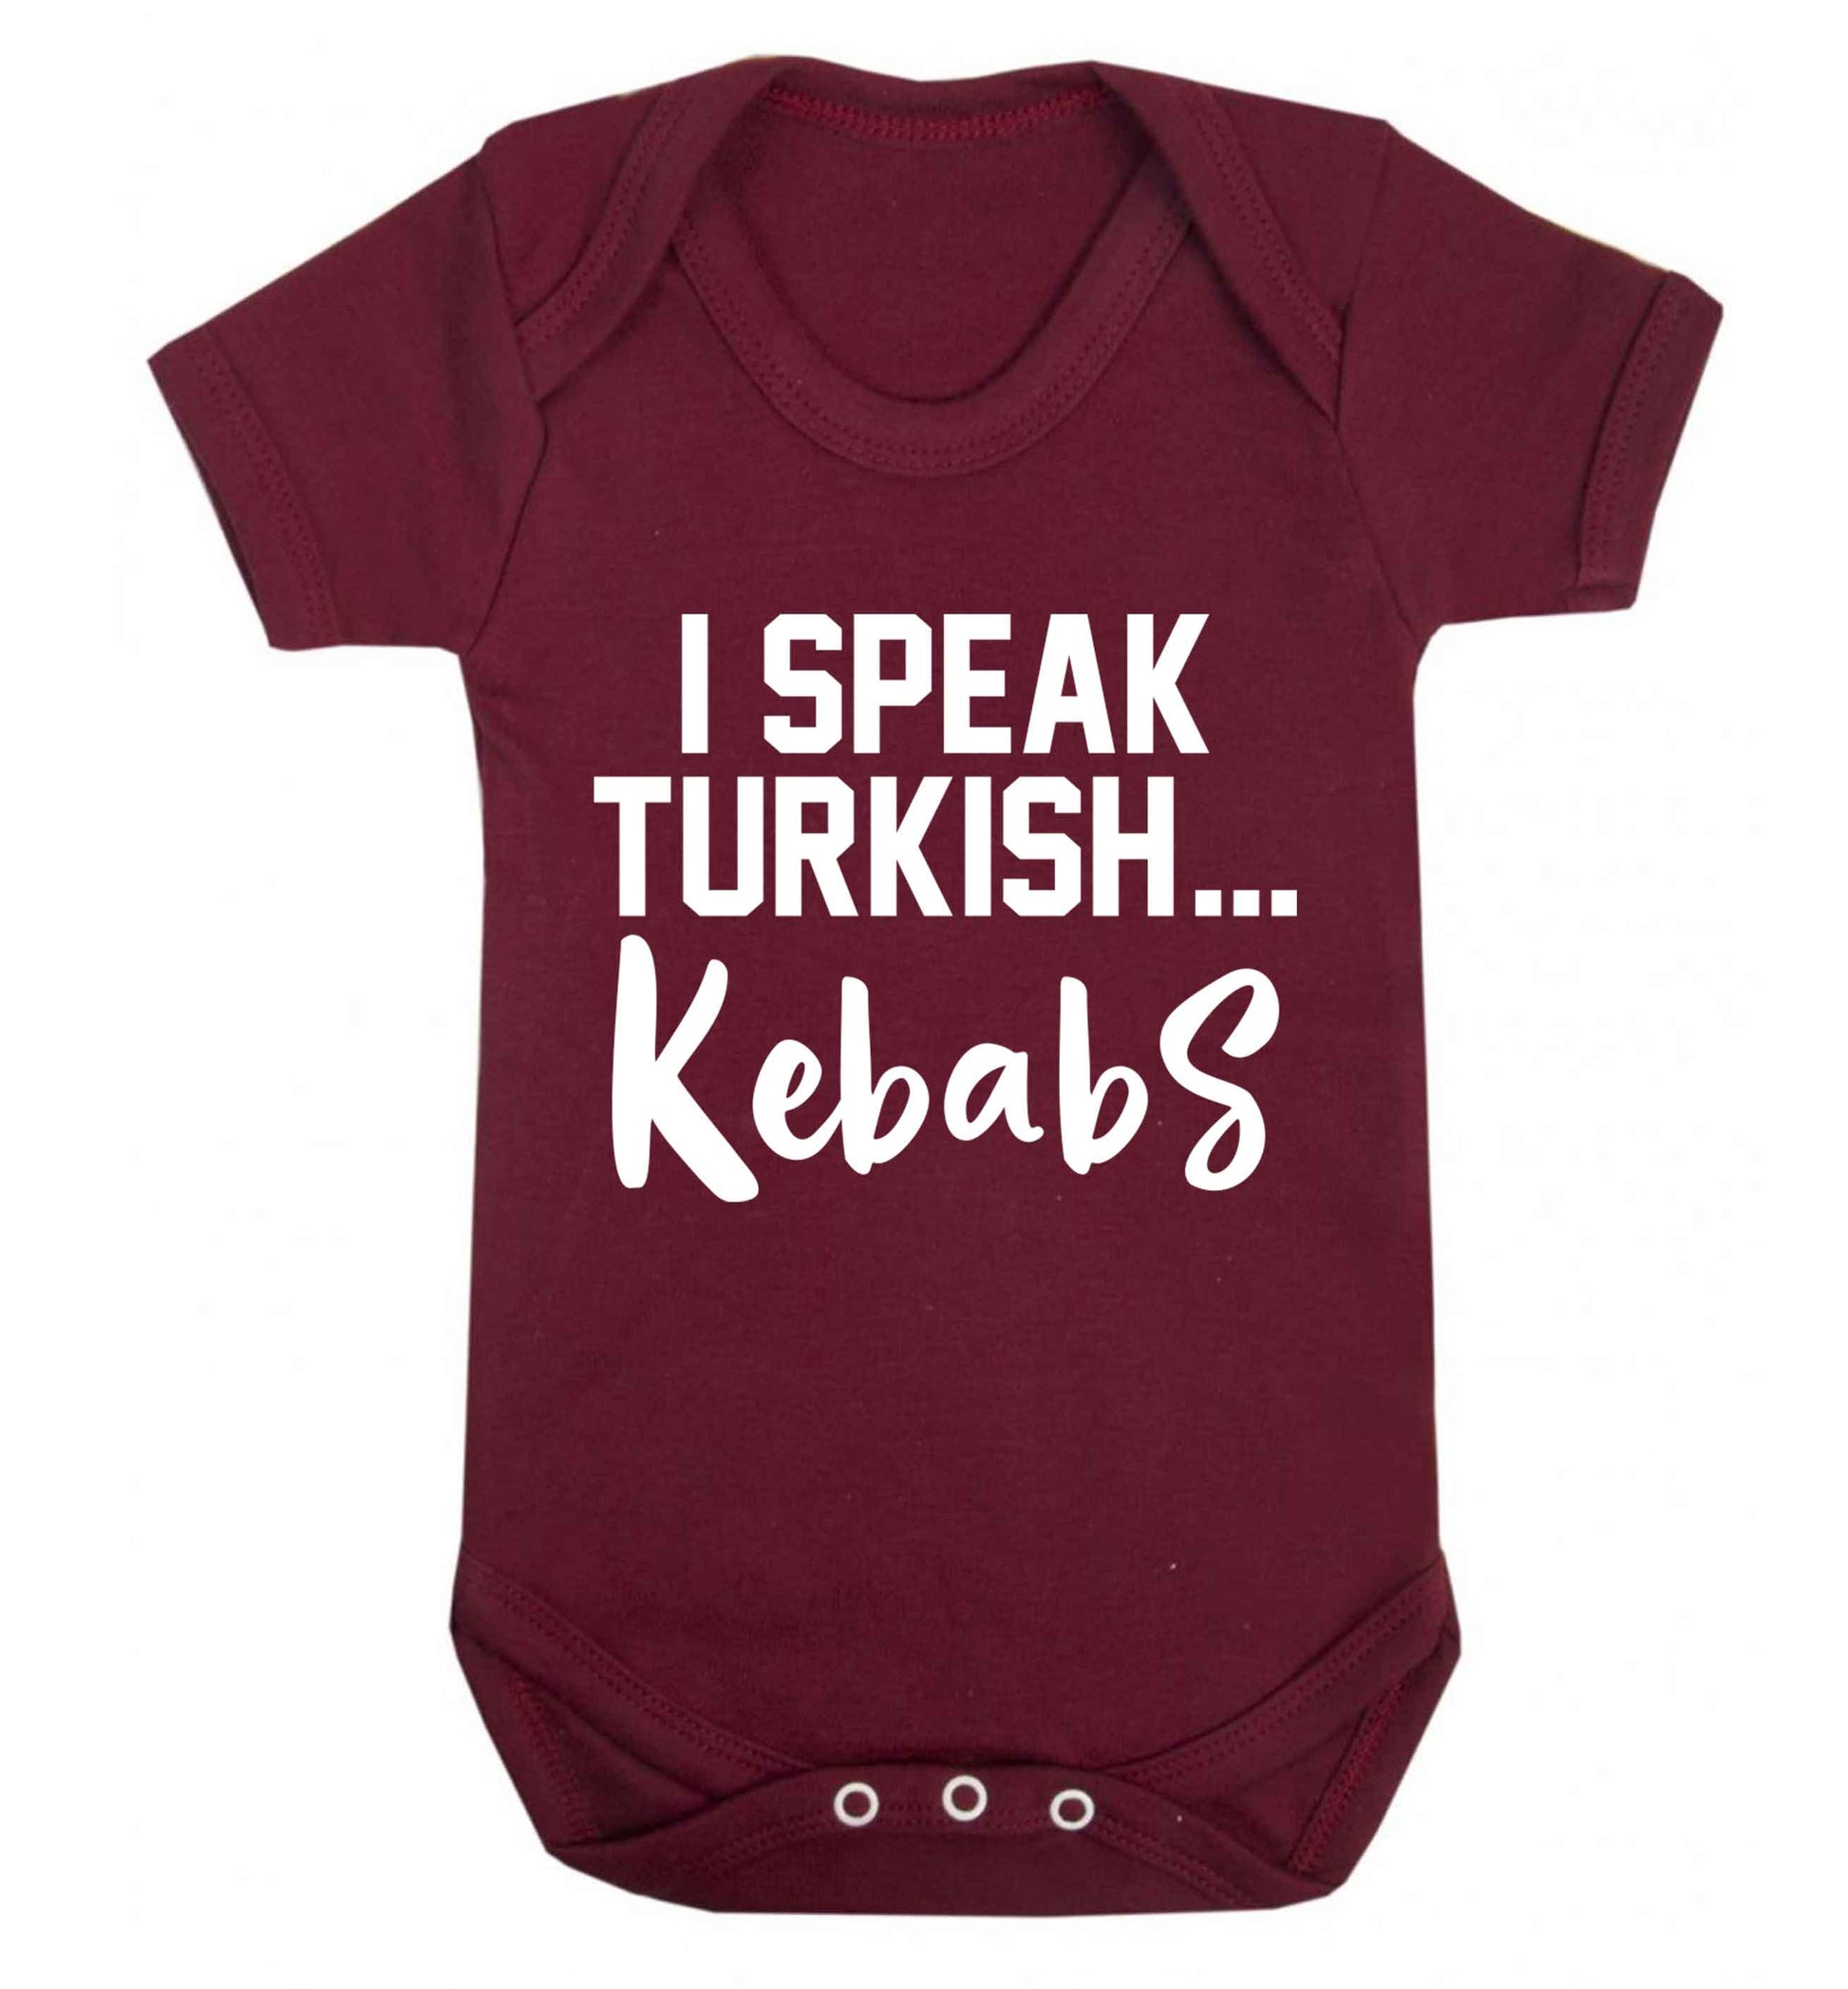 I speak Turkish...kebabs Baby Vest maroon 18-24 months